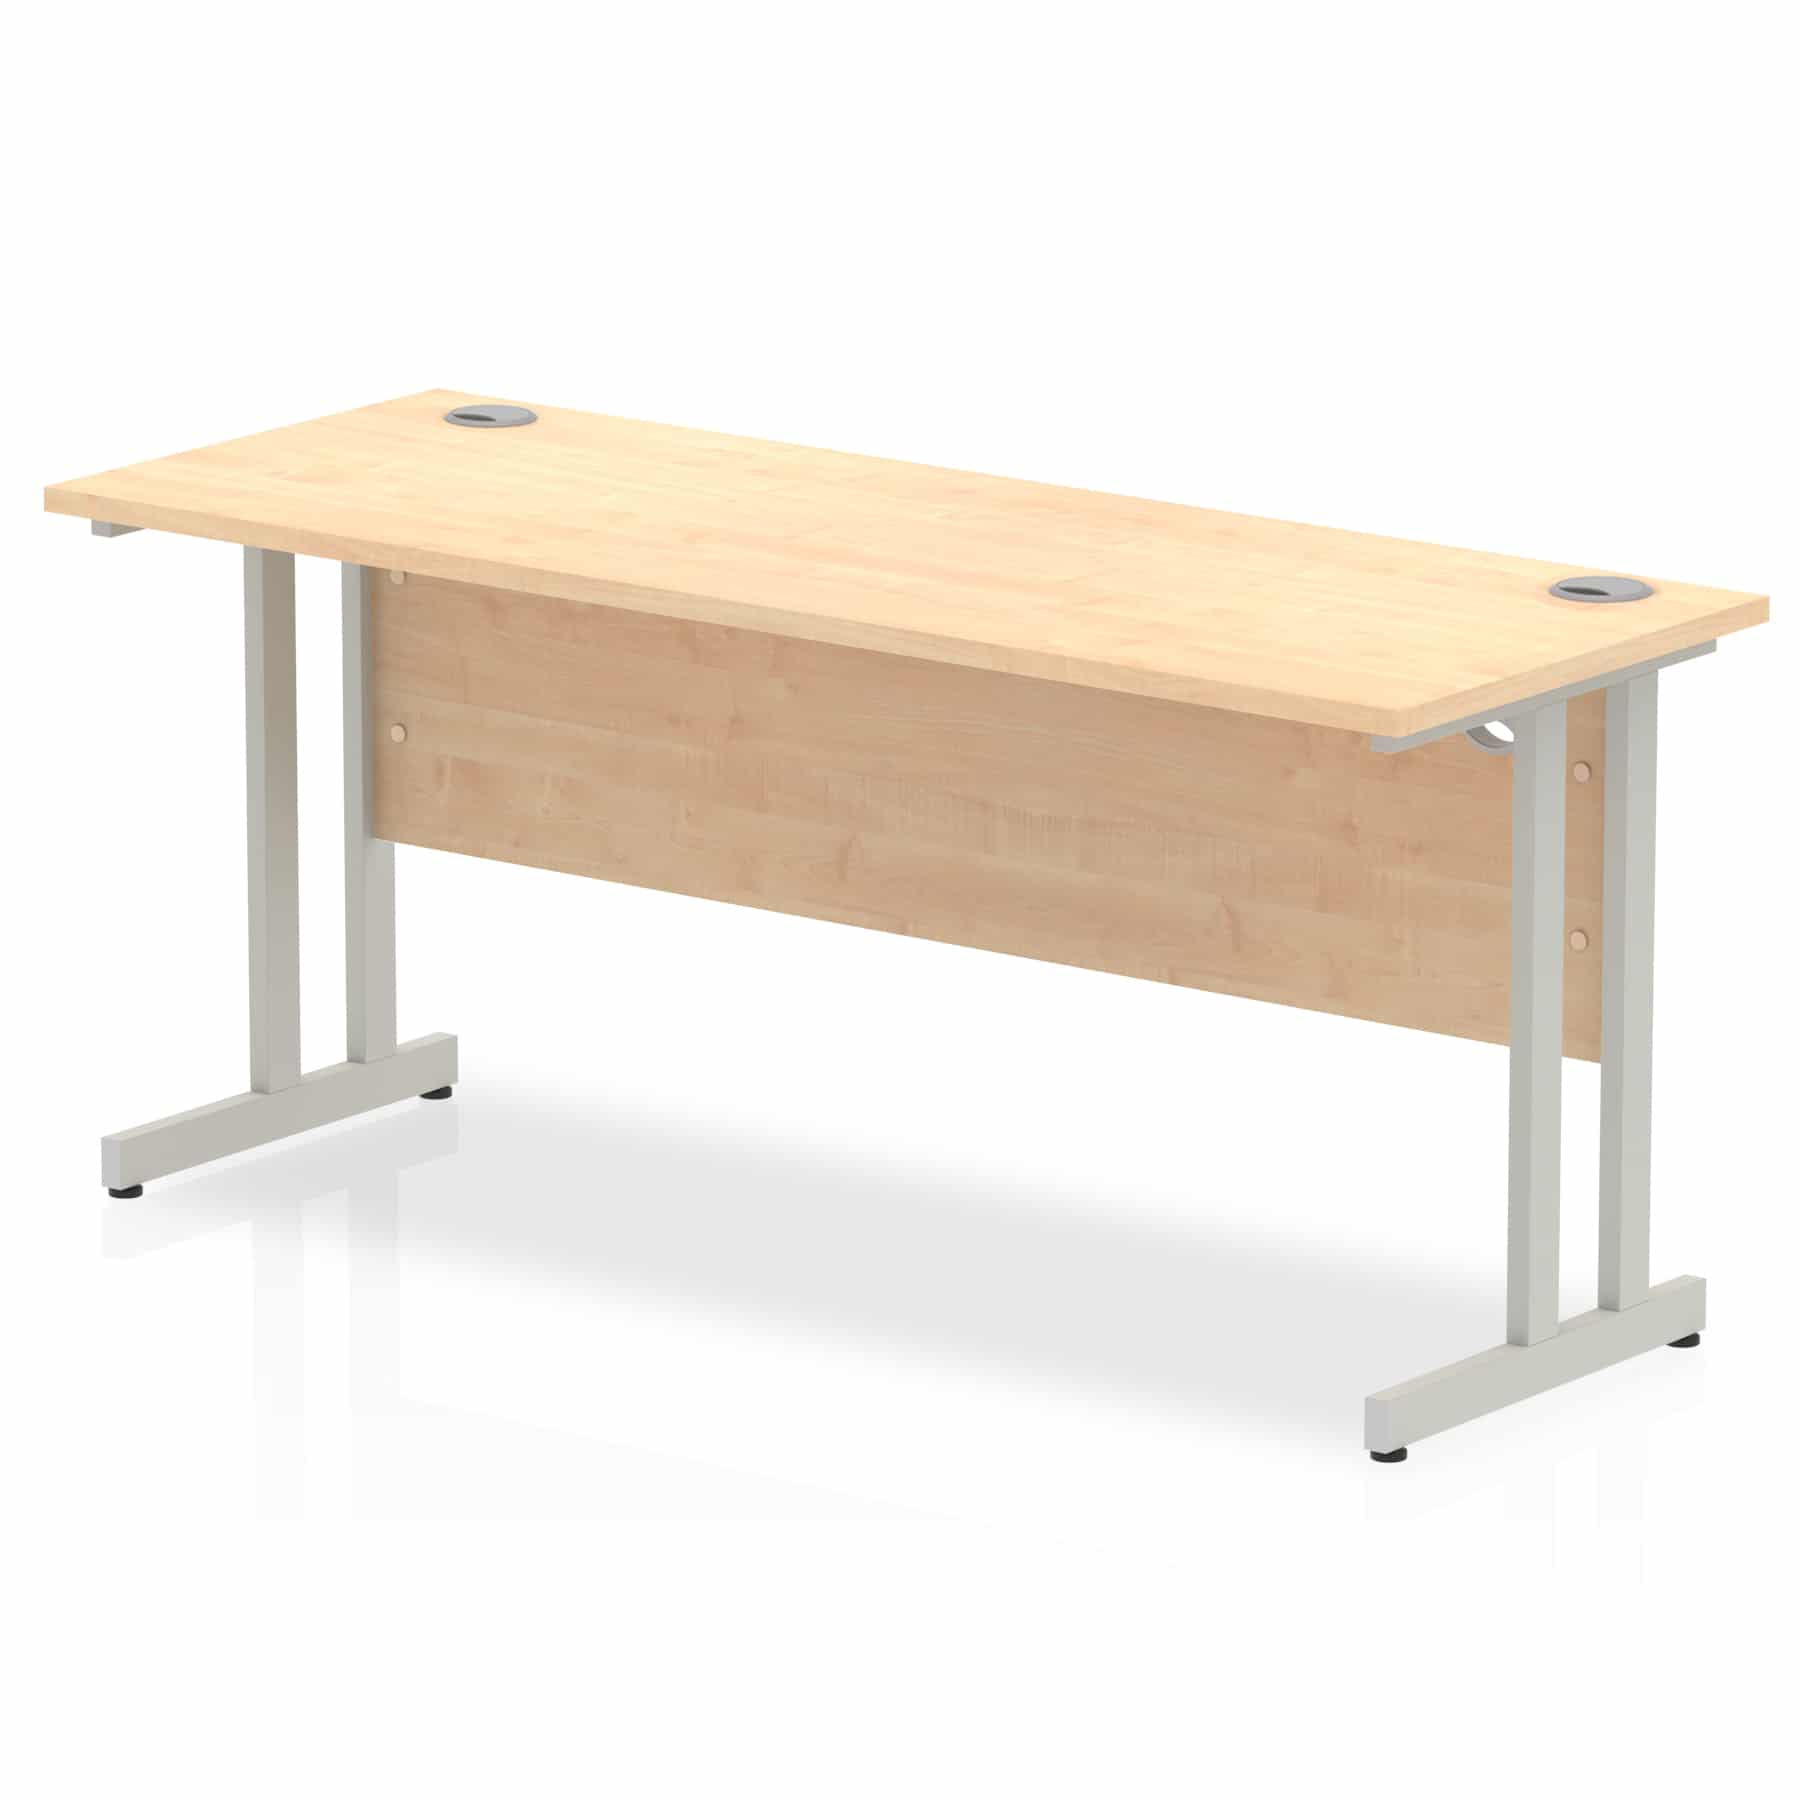 Slimline 1600mm X 600mm Rectangular Straight Desk In Maple